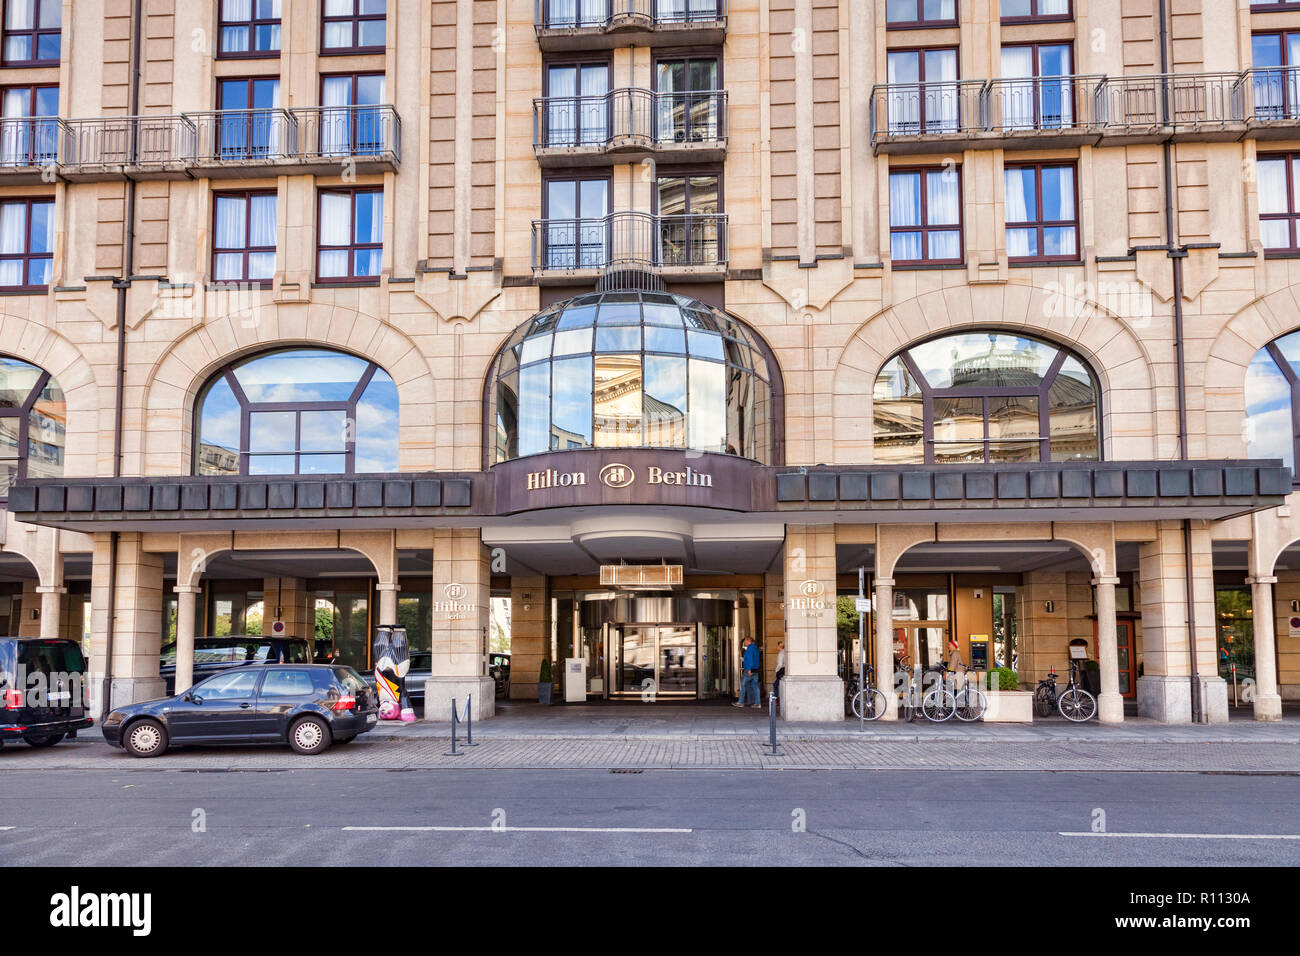 22 Septembre 2018 : Berlin, Allemagne - L'hôtel Hilton sur la place Gendarmenmarkt, dans la ville centrale. Banque D'Images